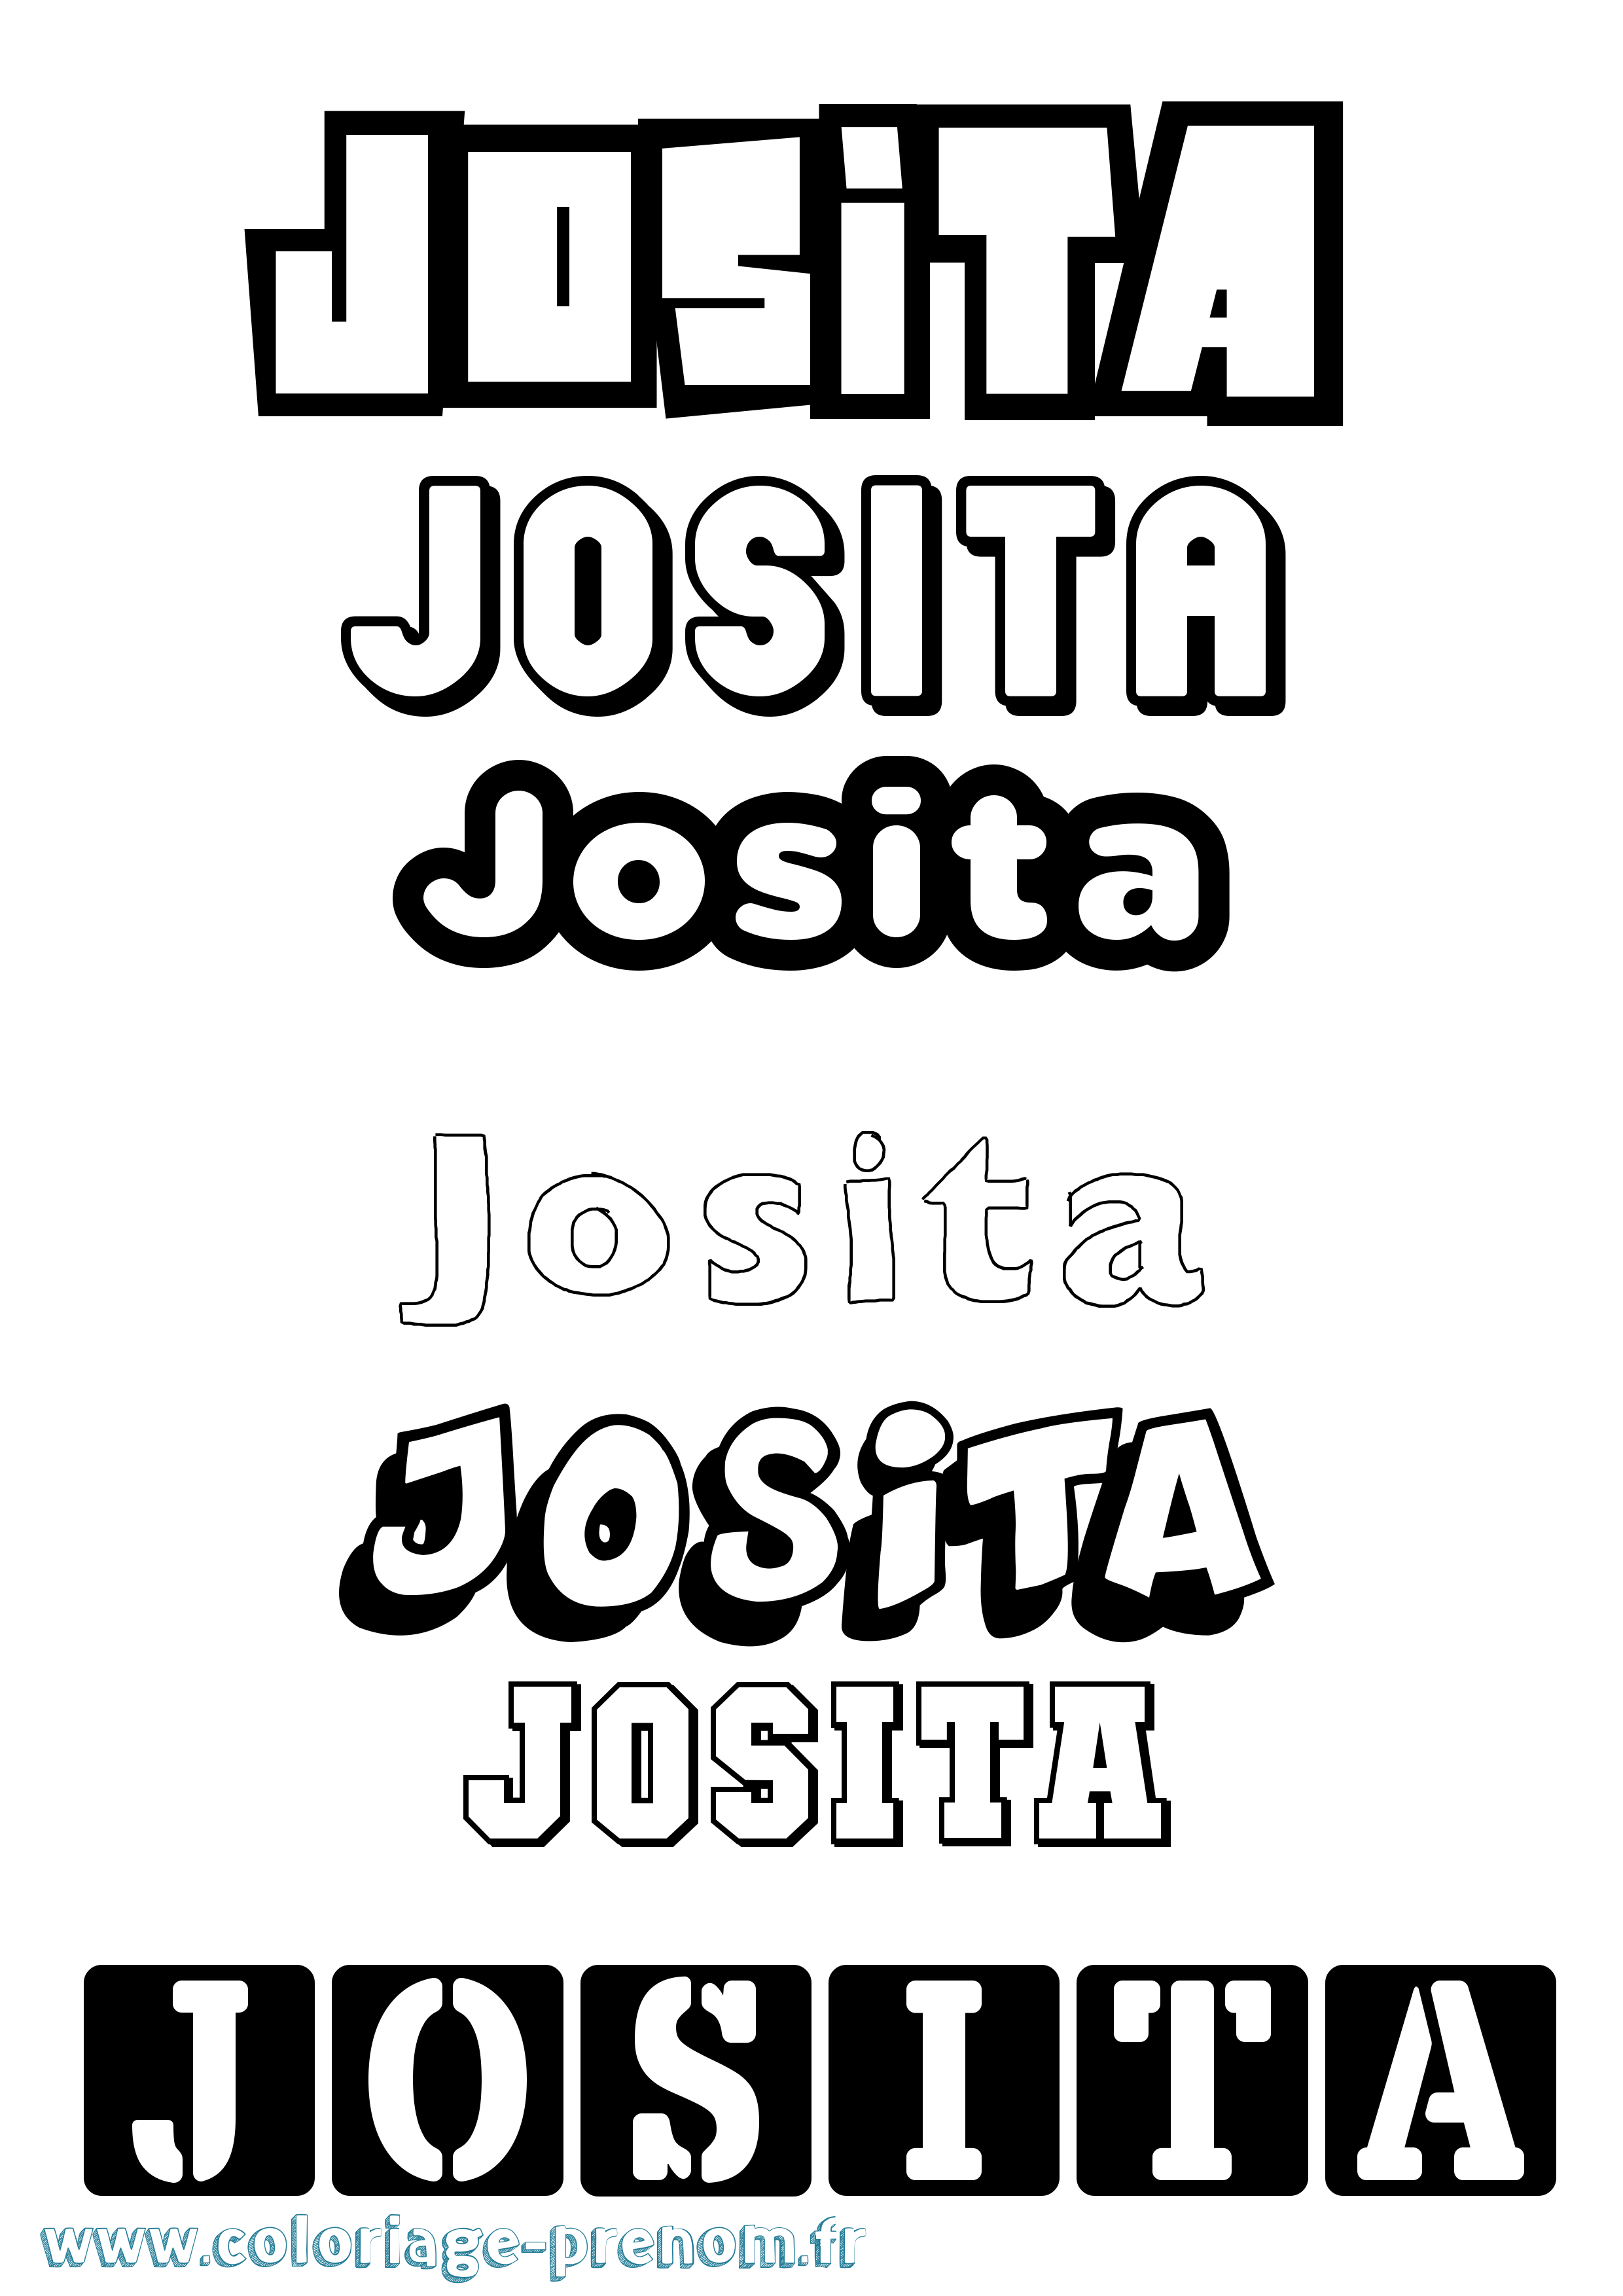 Coloriage prénom Josita Simple